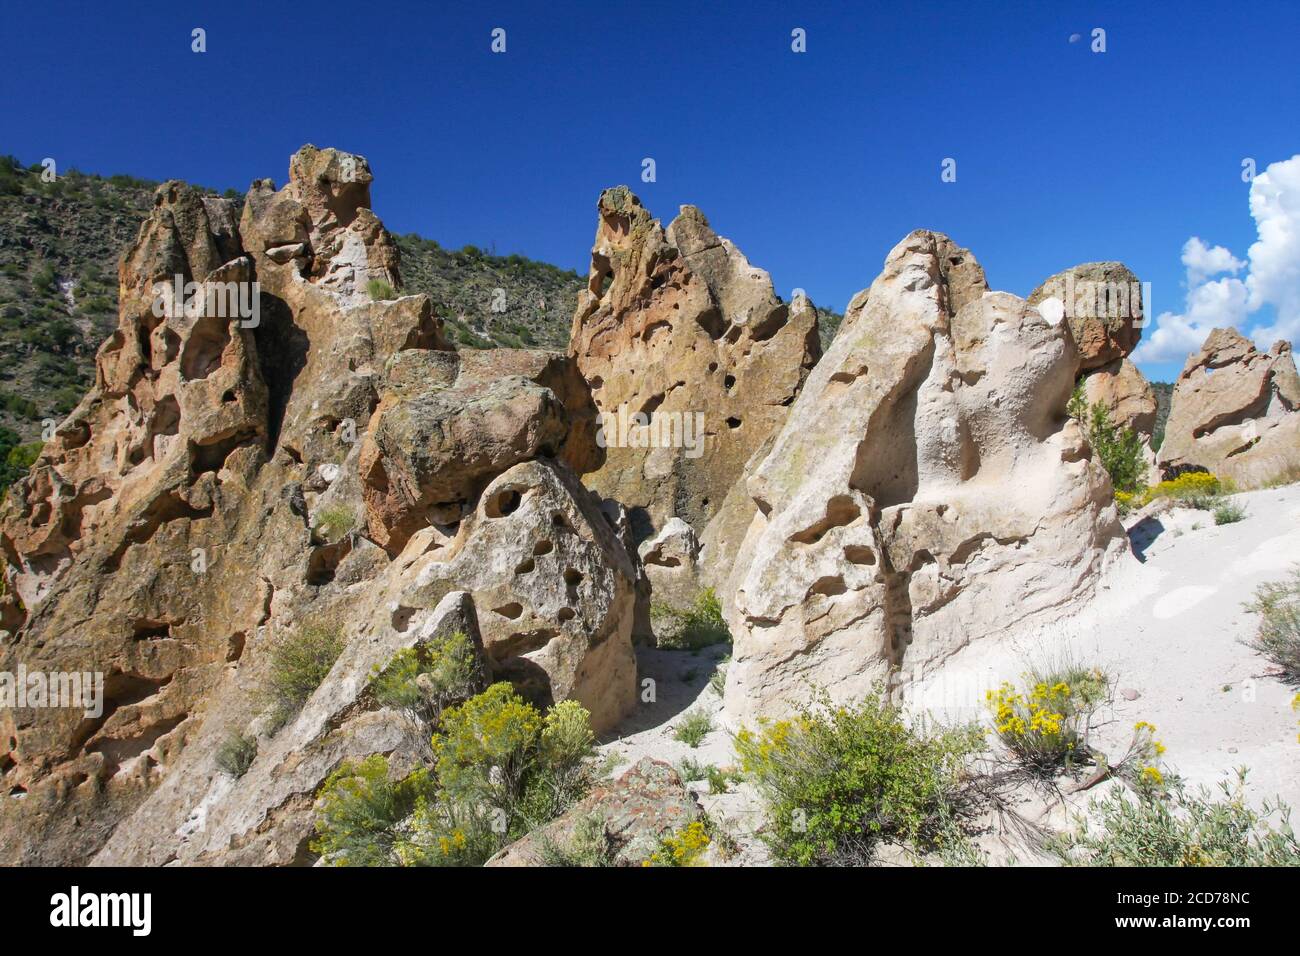 Formaciones rocosas en el Monumento Nacional Bandelier donde la ceniza volcánica consolidada forma roca conocida como tuff. Frijoles Canyon, Nuevo México, Estados Unidos Foto de stock